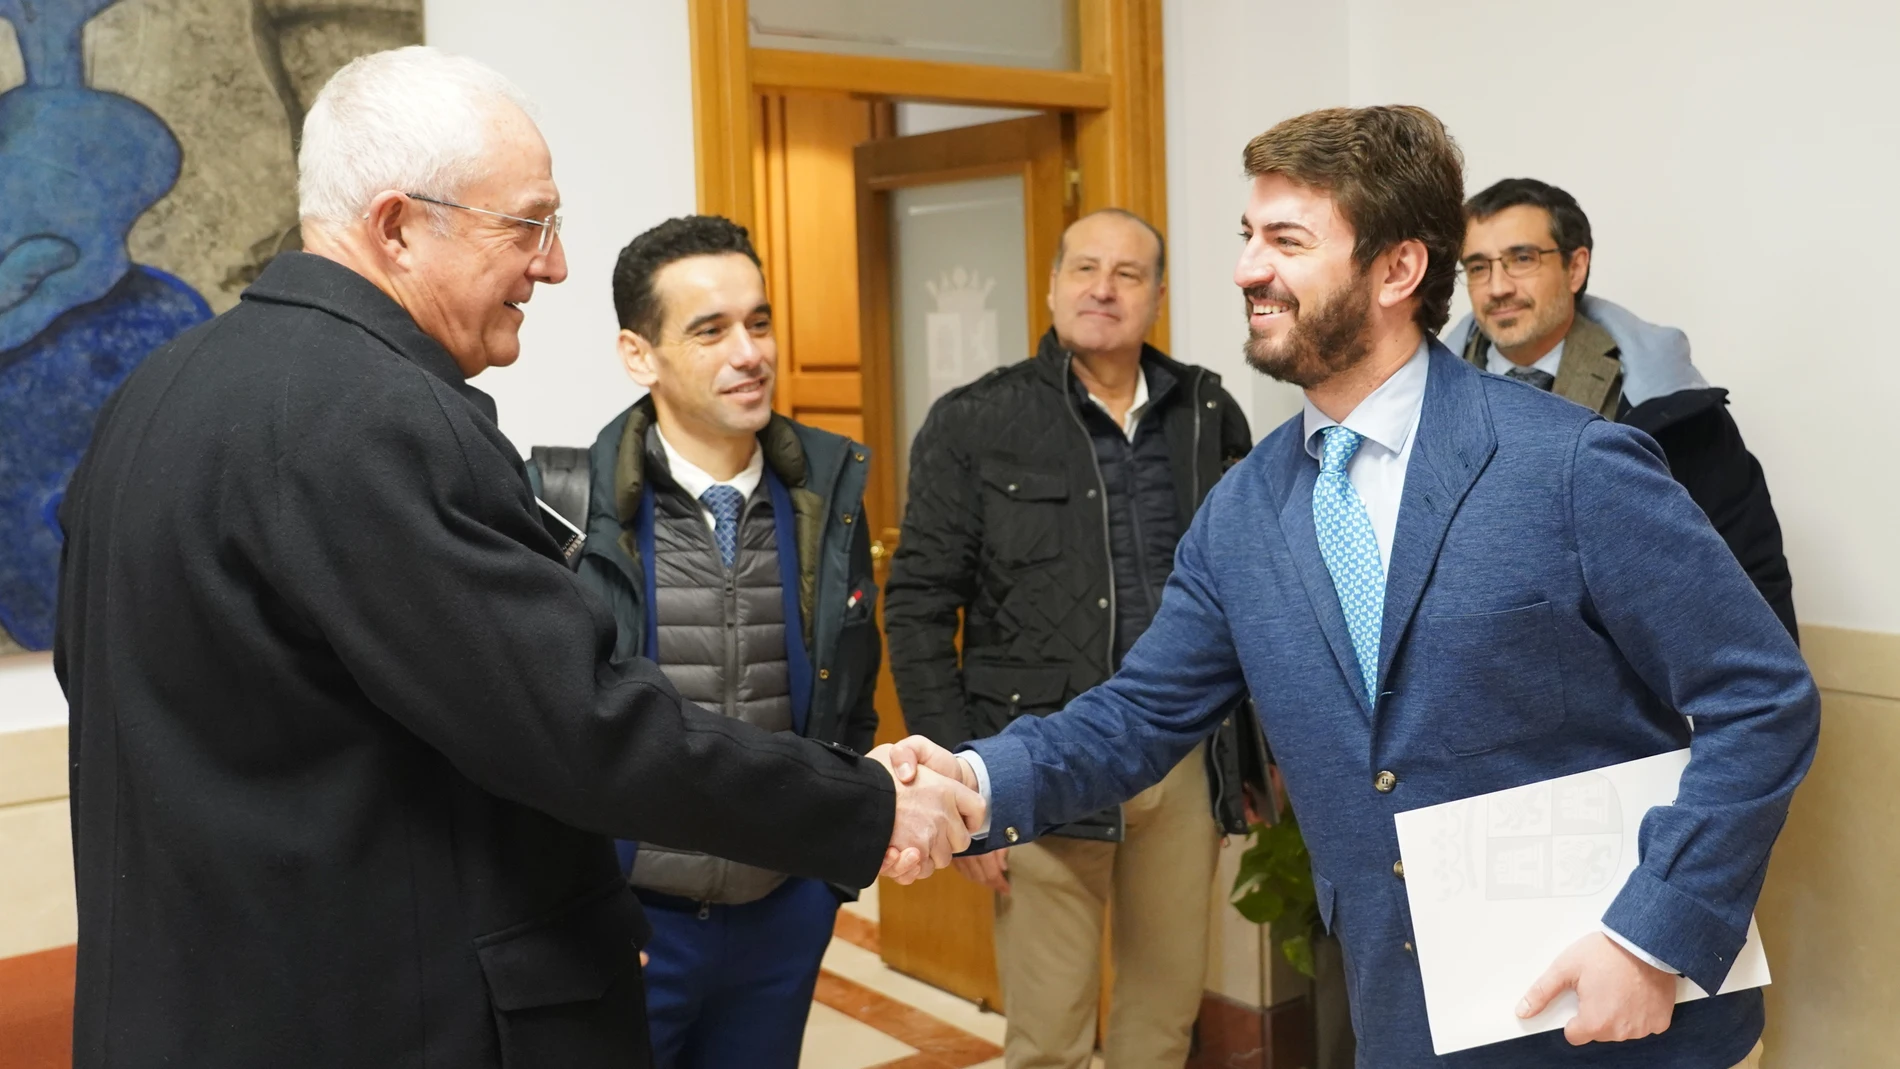 El vicepresidente de la Junta de Castilla y León, Juan García-Gallardo, se reúne con representantes del grupo alimentario Vall Companys